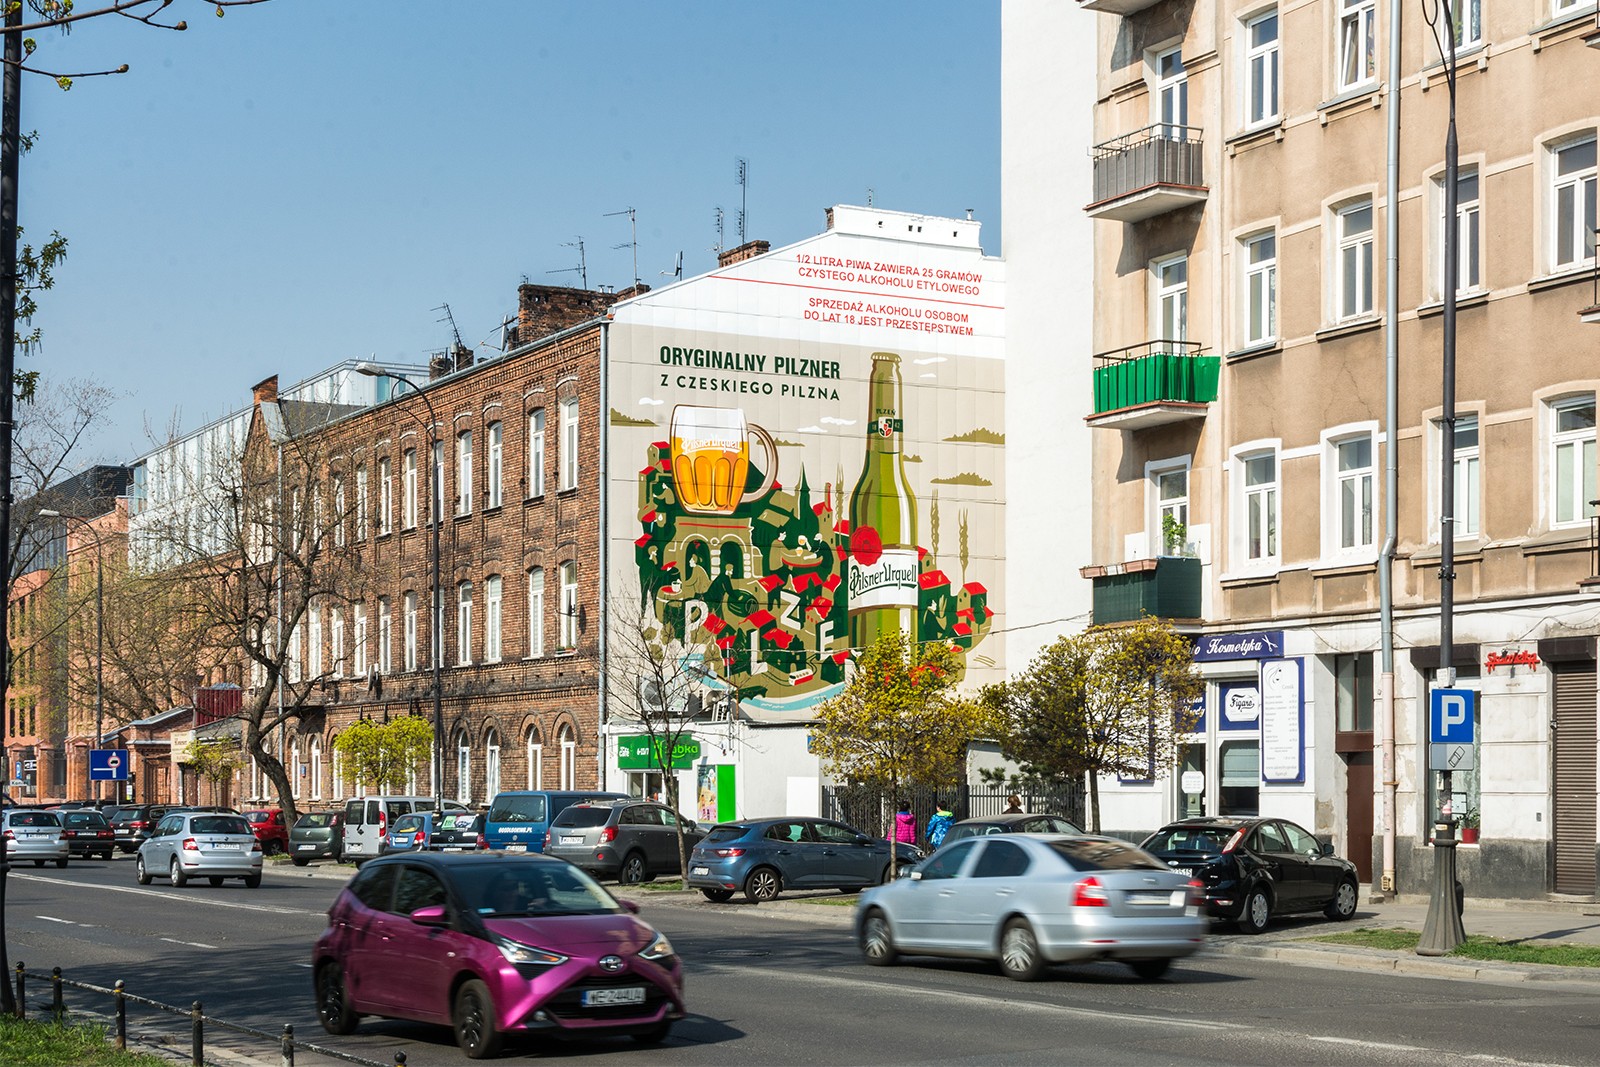 Mural Pilsner Urquell przy ulicy Ząbkowskiej w Warszawie | Original pilsner from Czech Pilsen | Portfolio